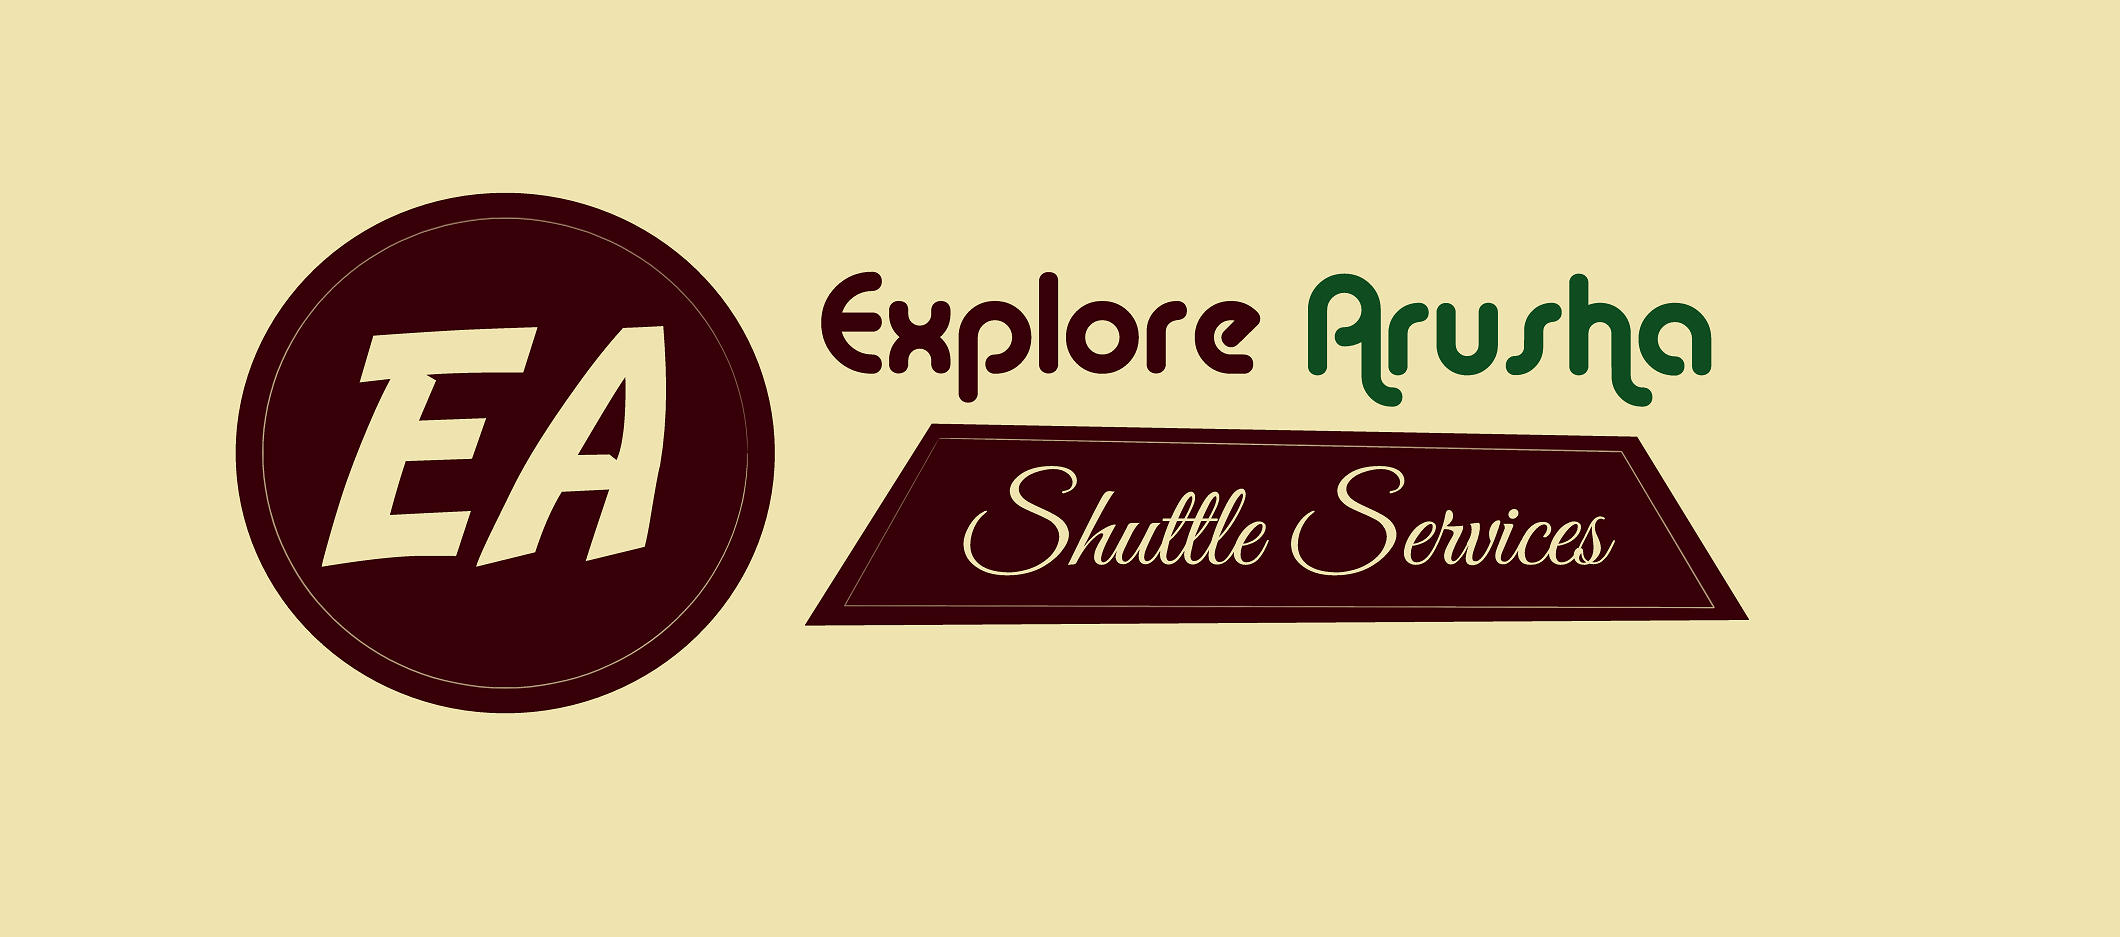 Explore Arusha Shuttle Services